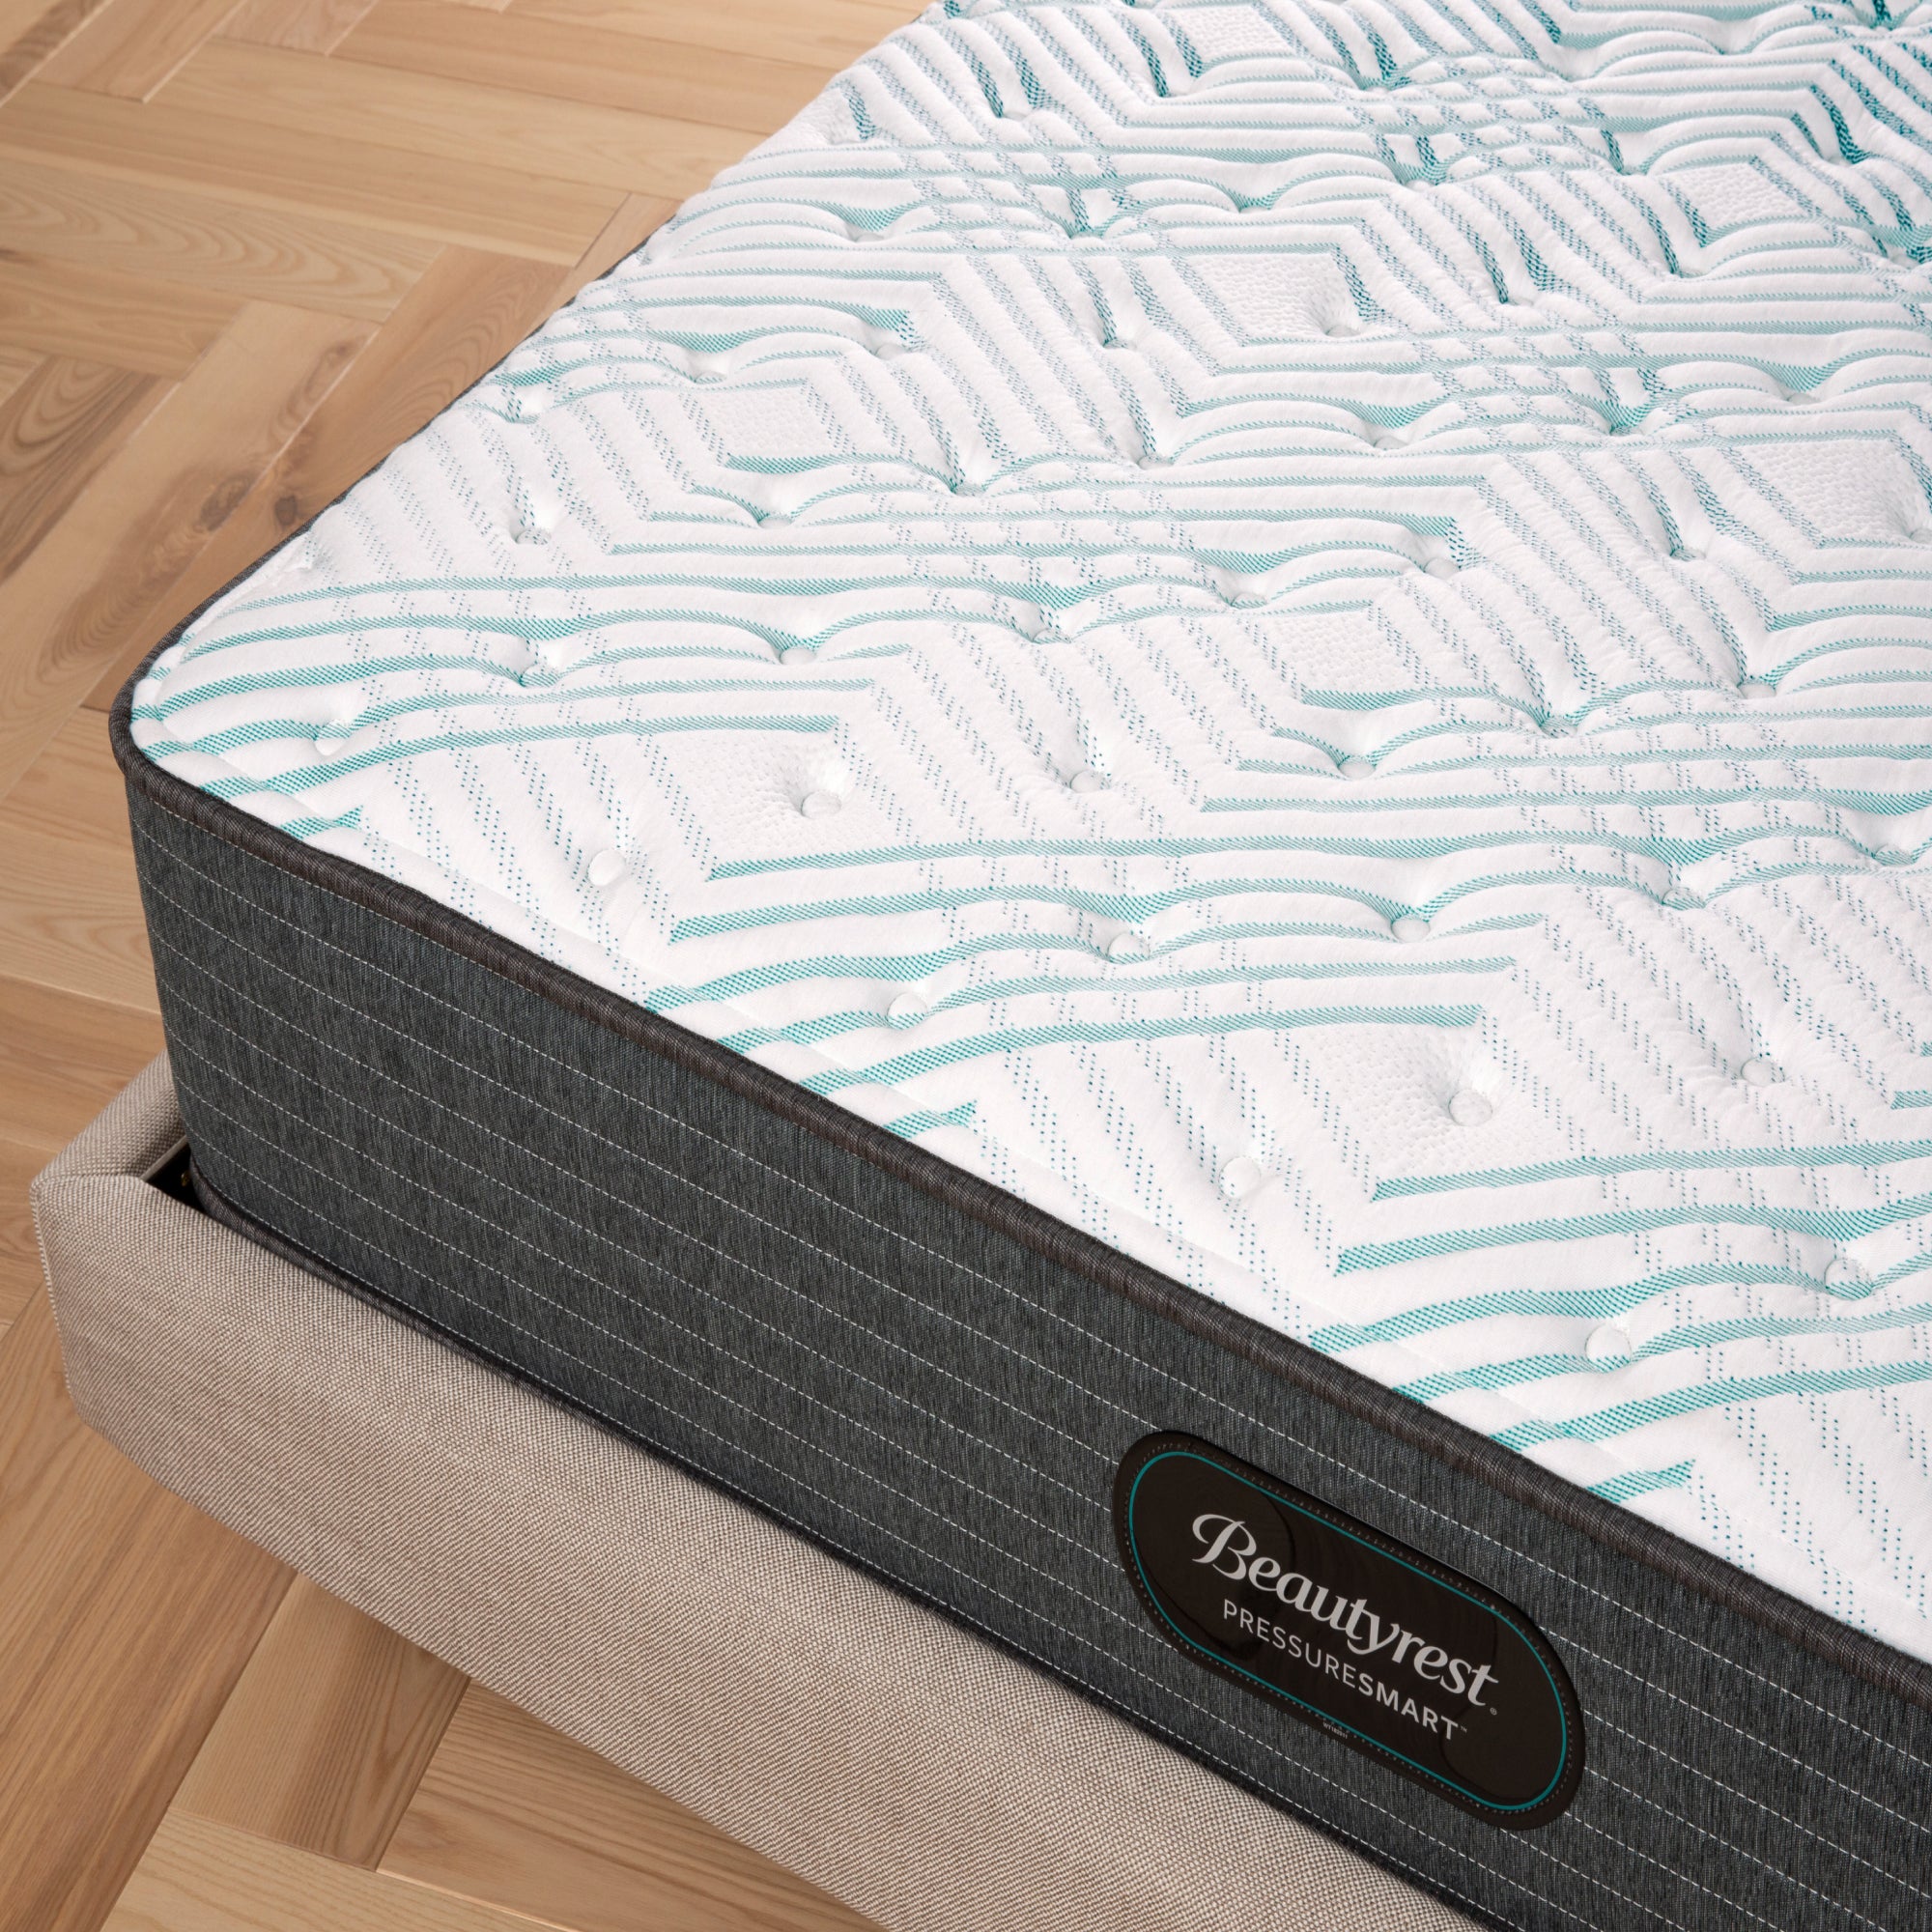 Corner view of the Beautyrest PressureSmart mattress in a bedroom || feel: firm || series: standard